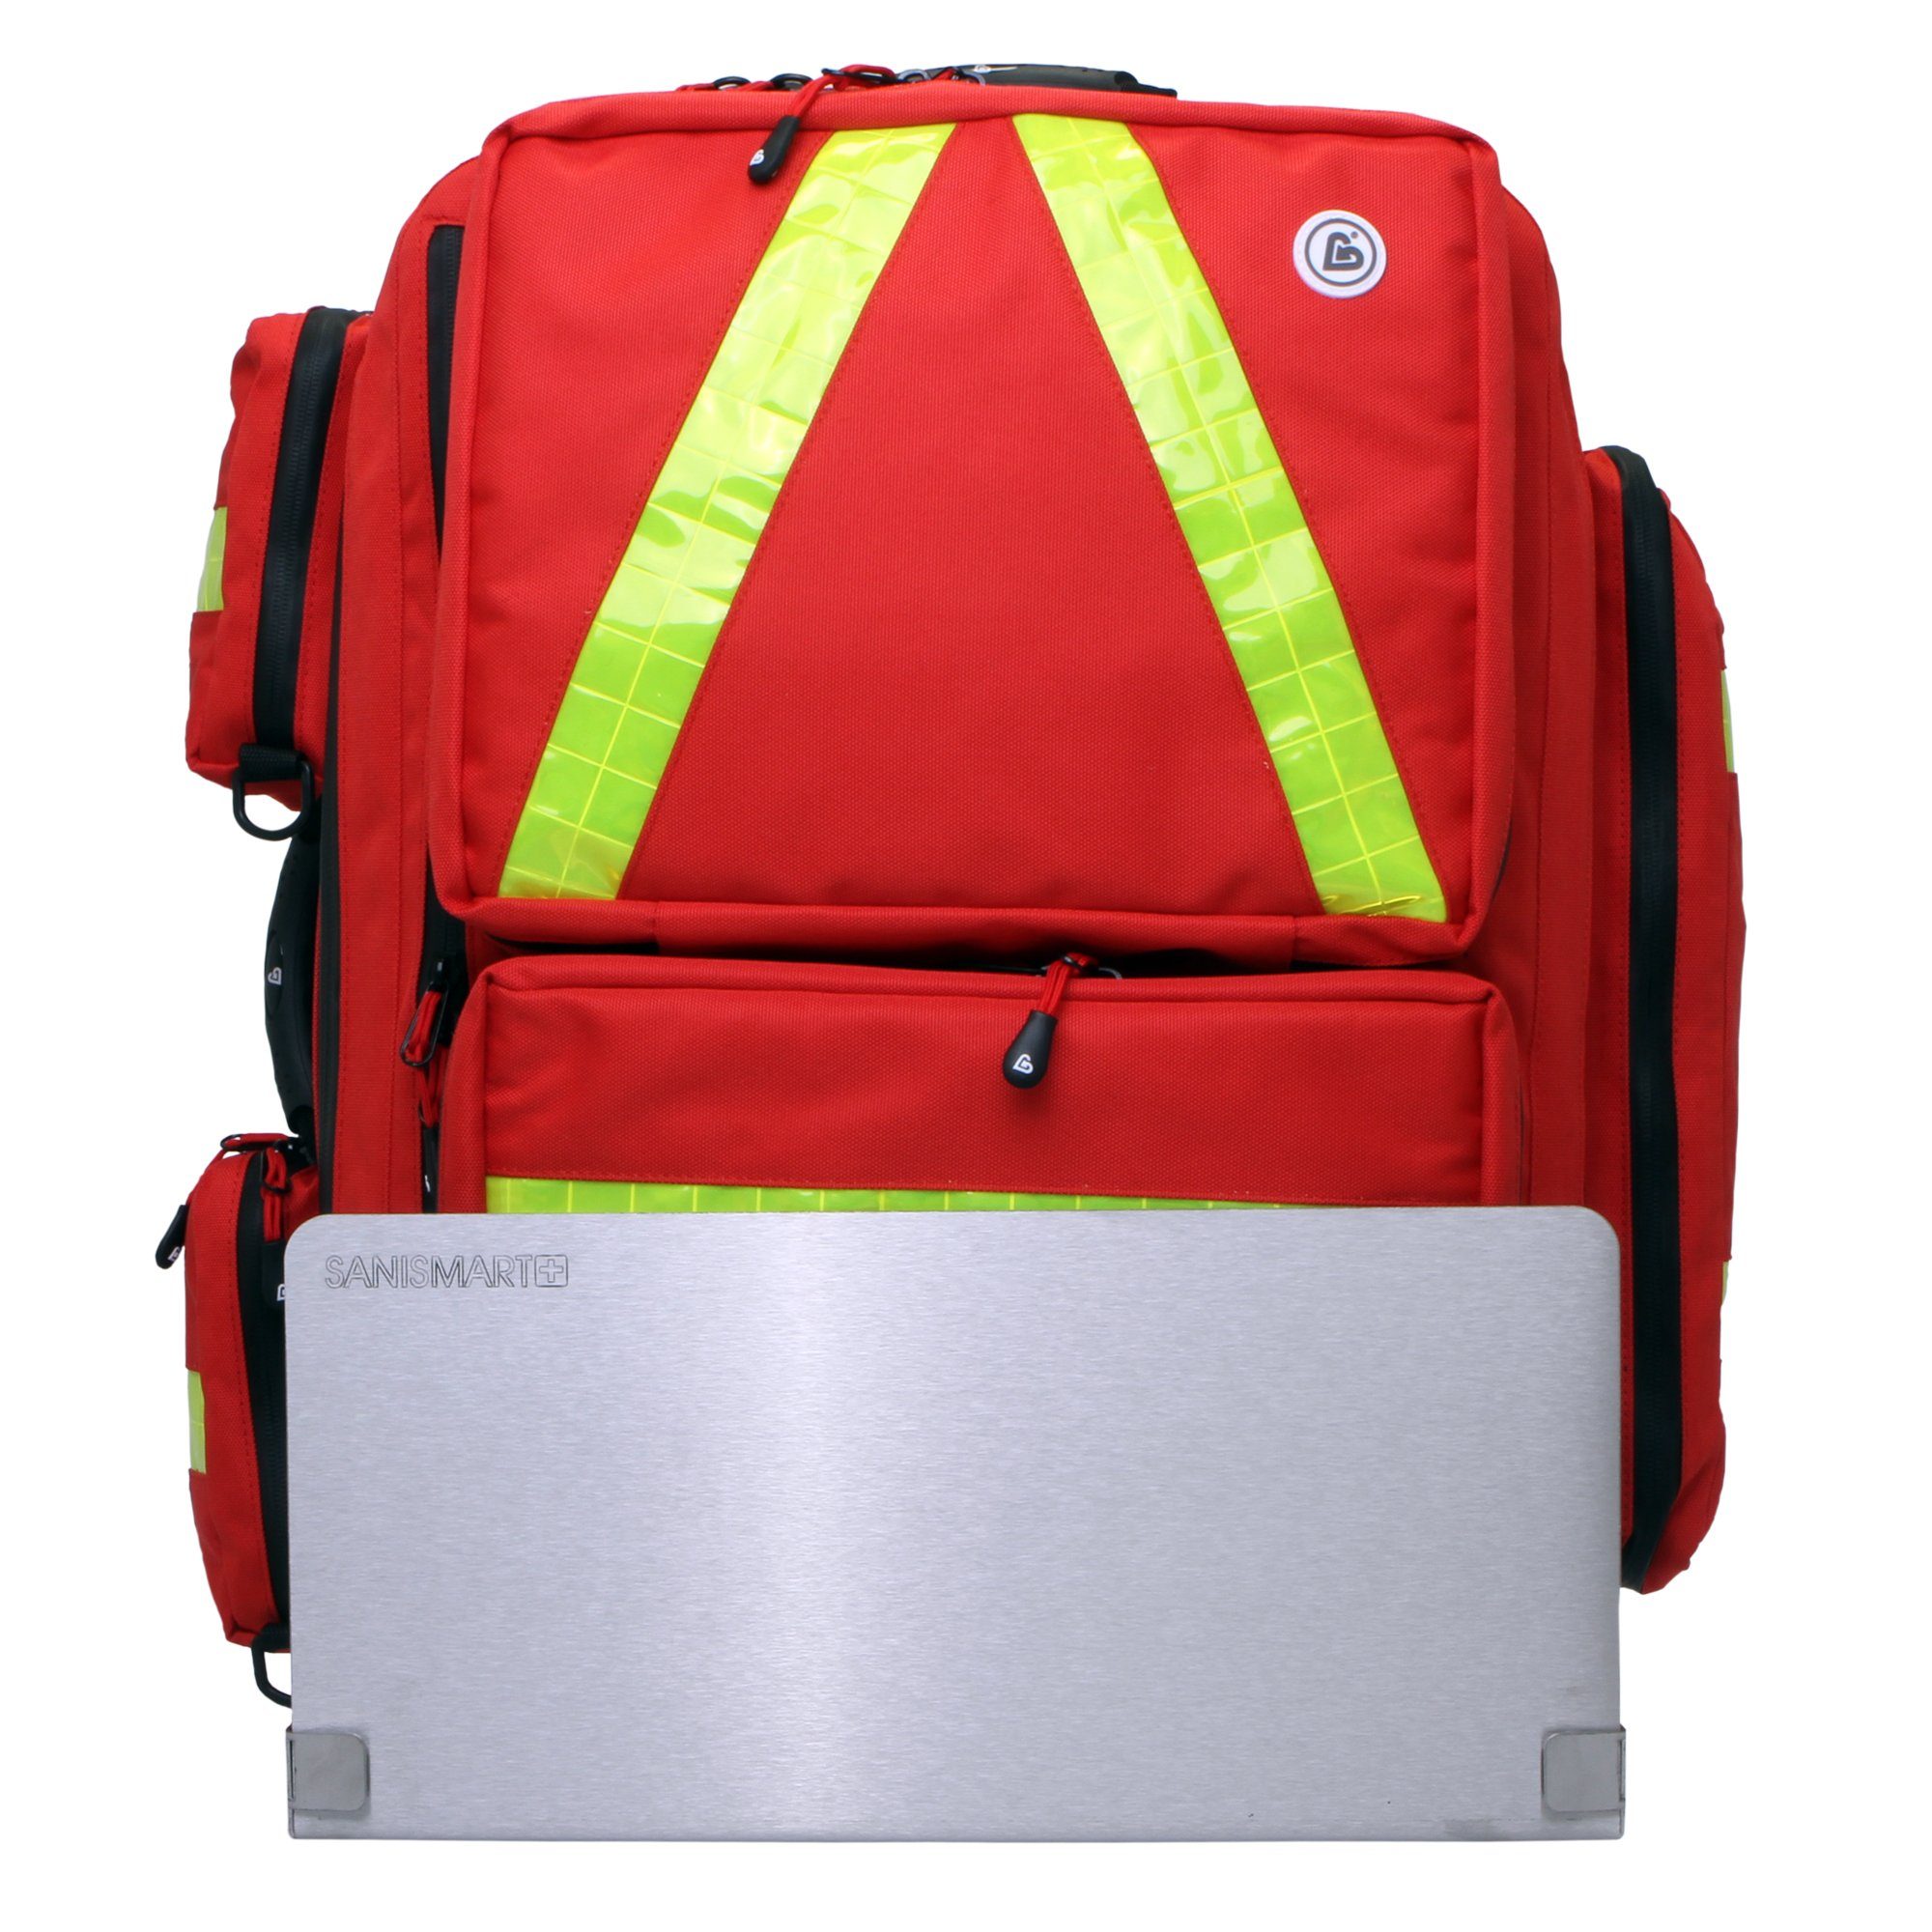 für Notfallrucksack mit Arzttasche Medicus Nylon Wandhalterung XL Notfallrucksäcke SANISMART Rot